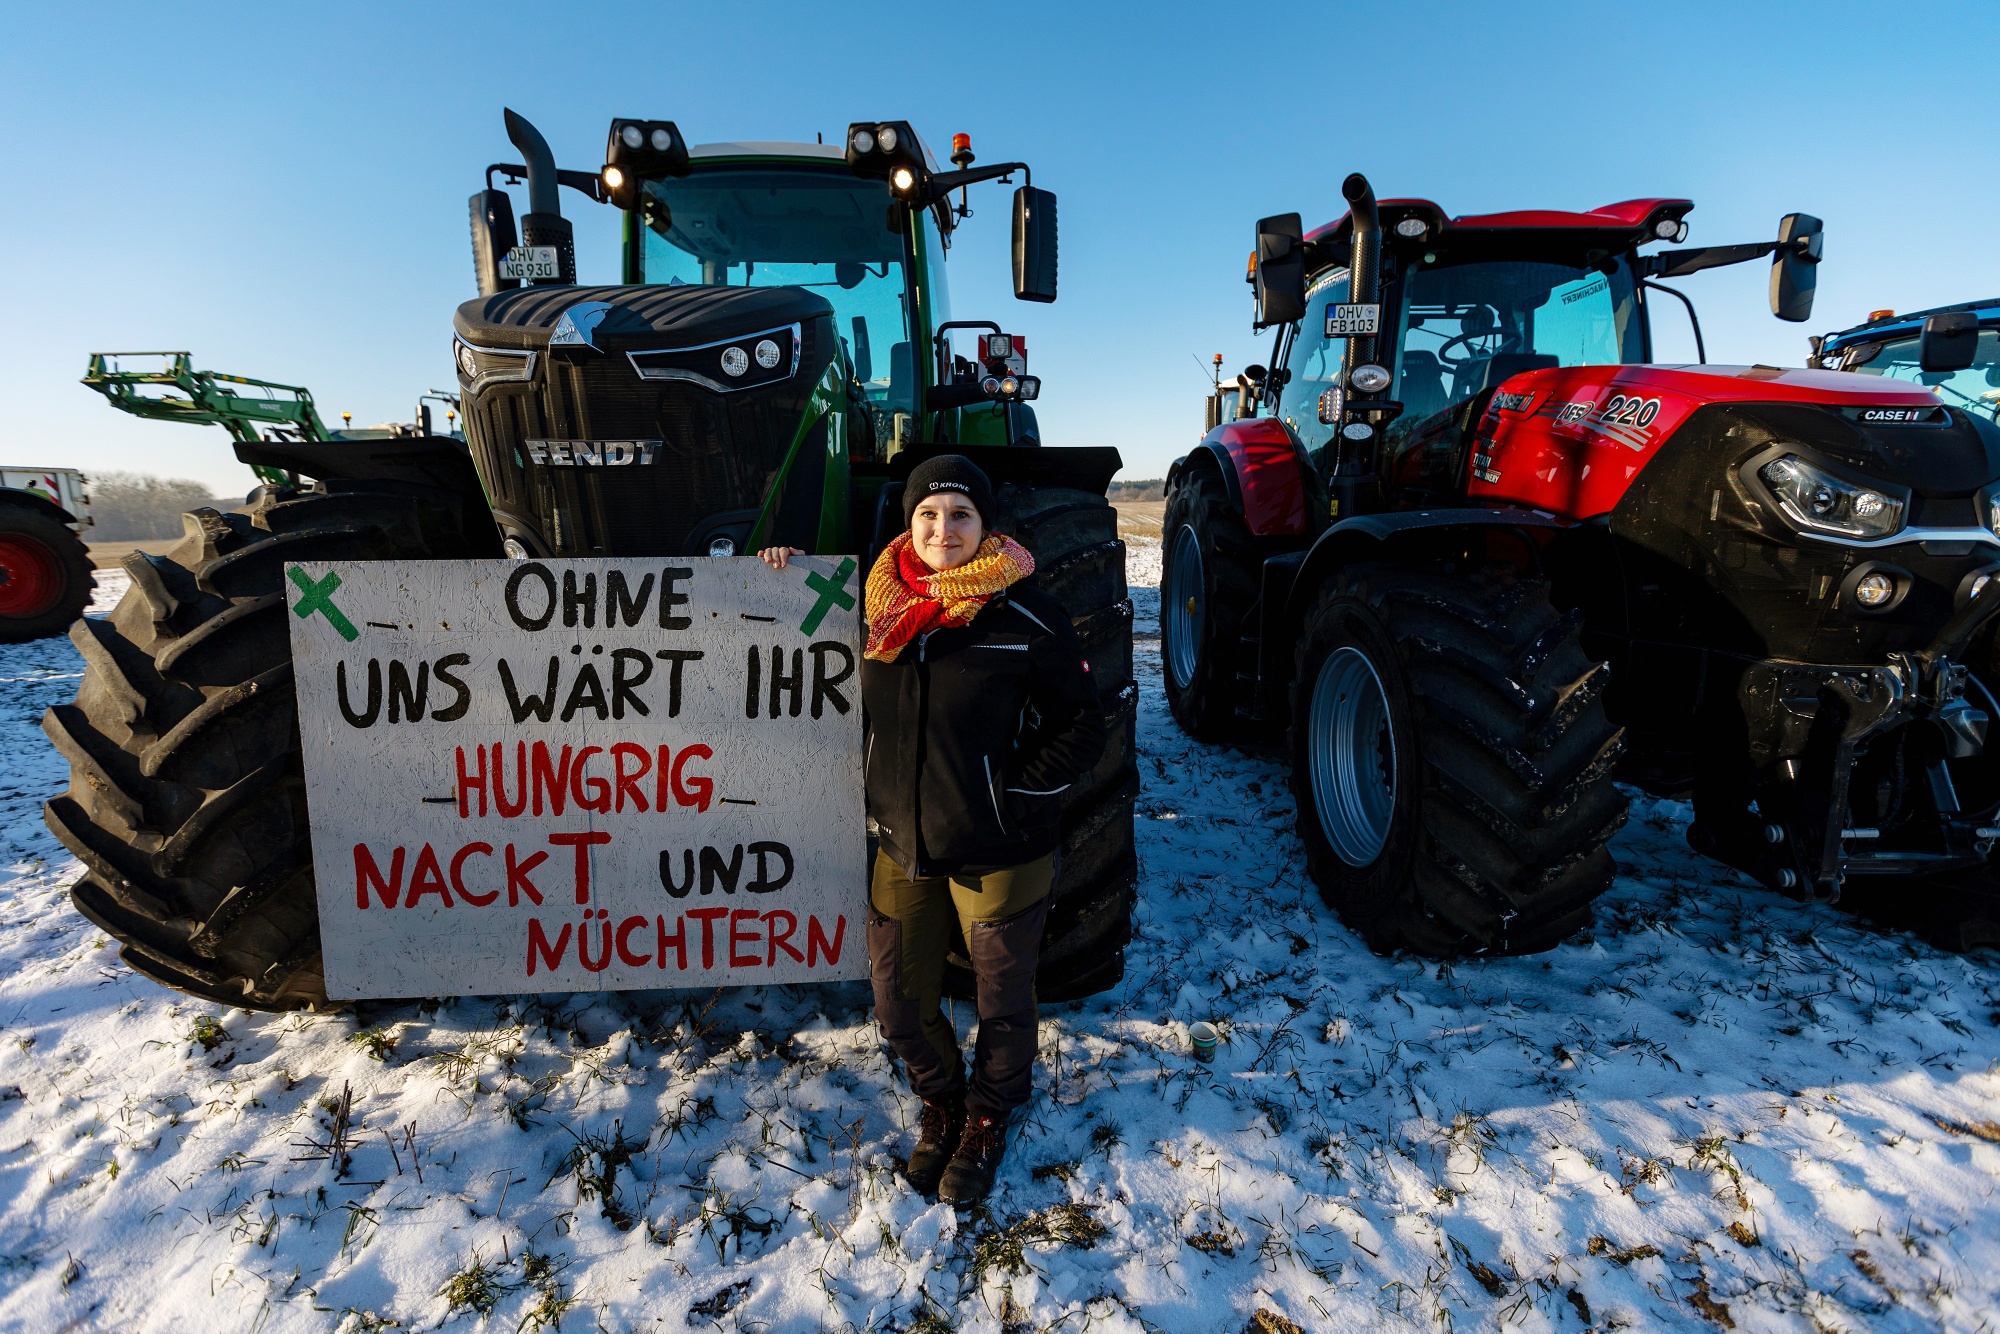 Немецкие фермеры организовали колонну тракторов в знак протеста против субсидий